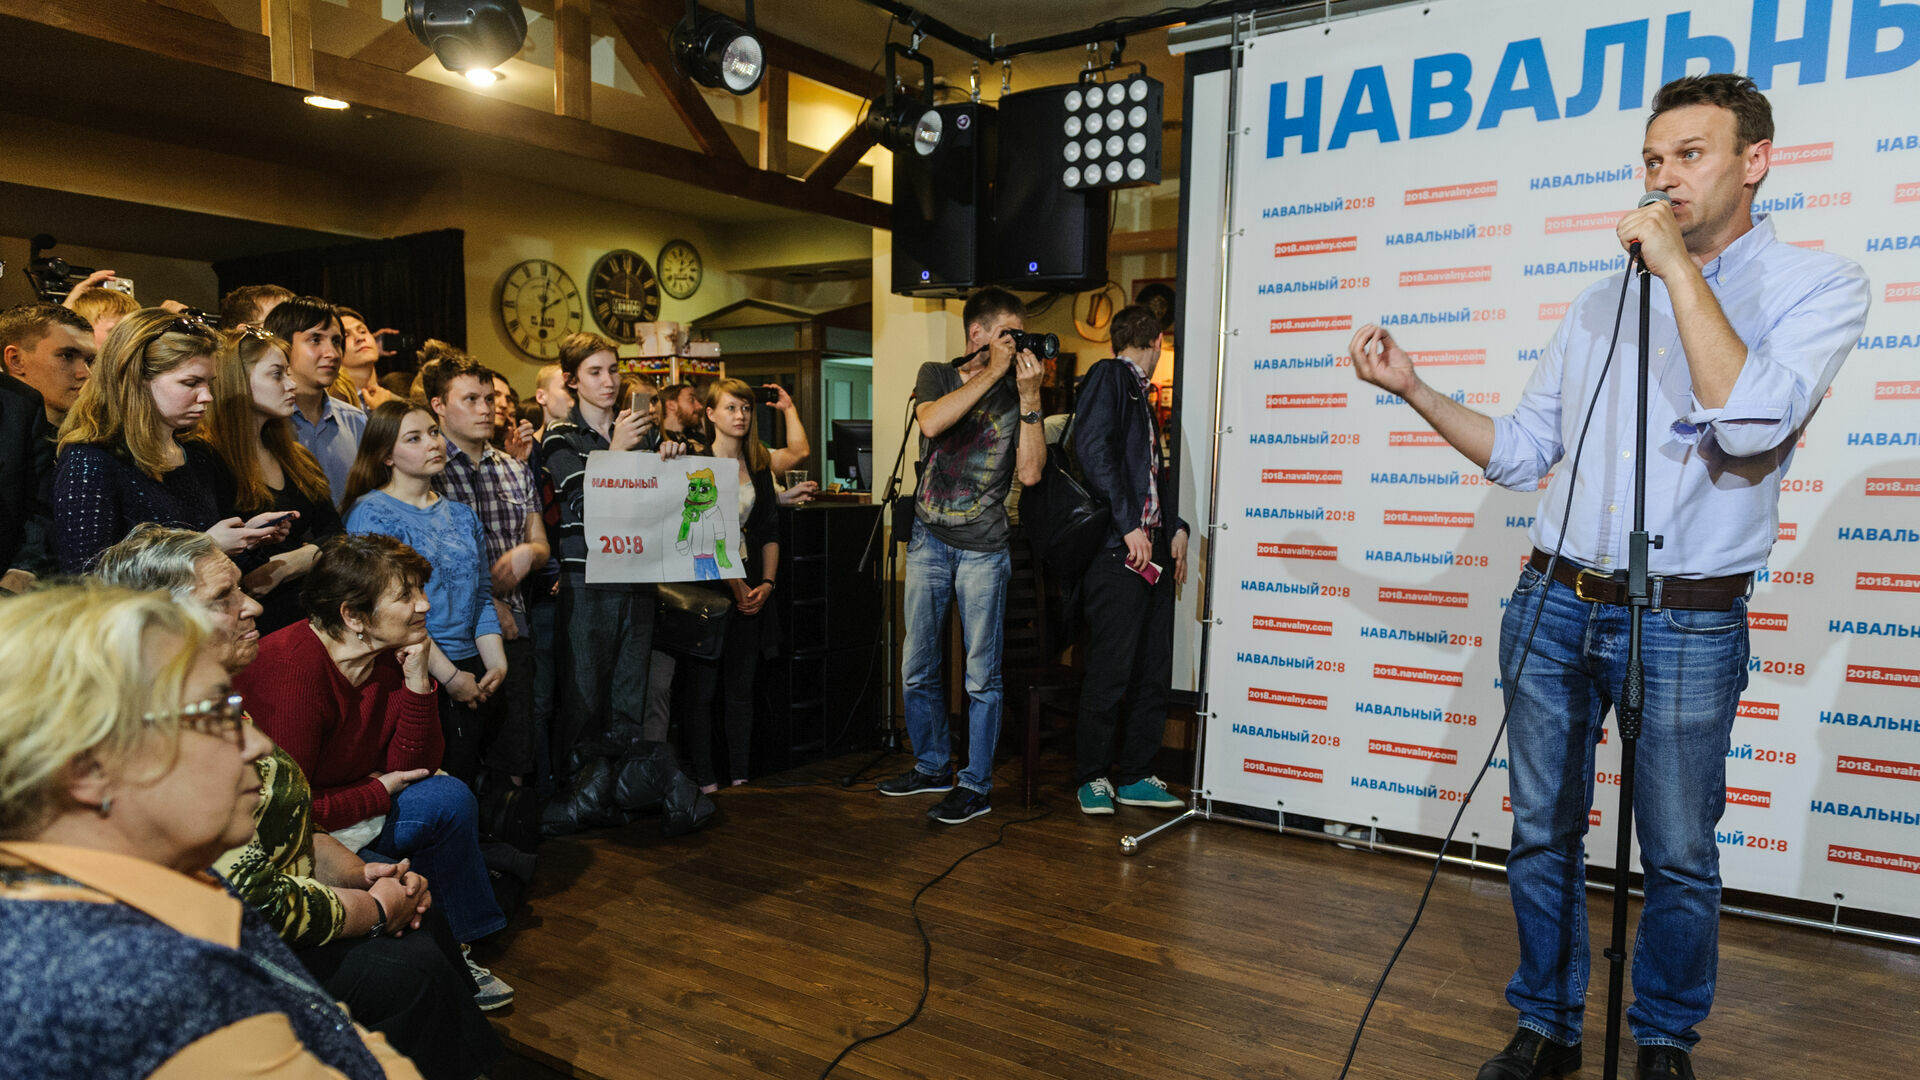 Алексея Навального задержали за призывы к участию в несанкционированных акциях